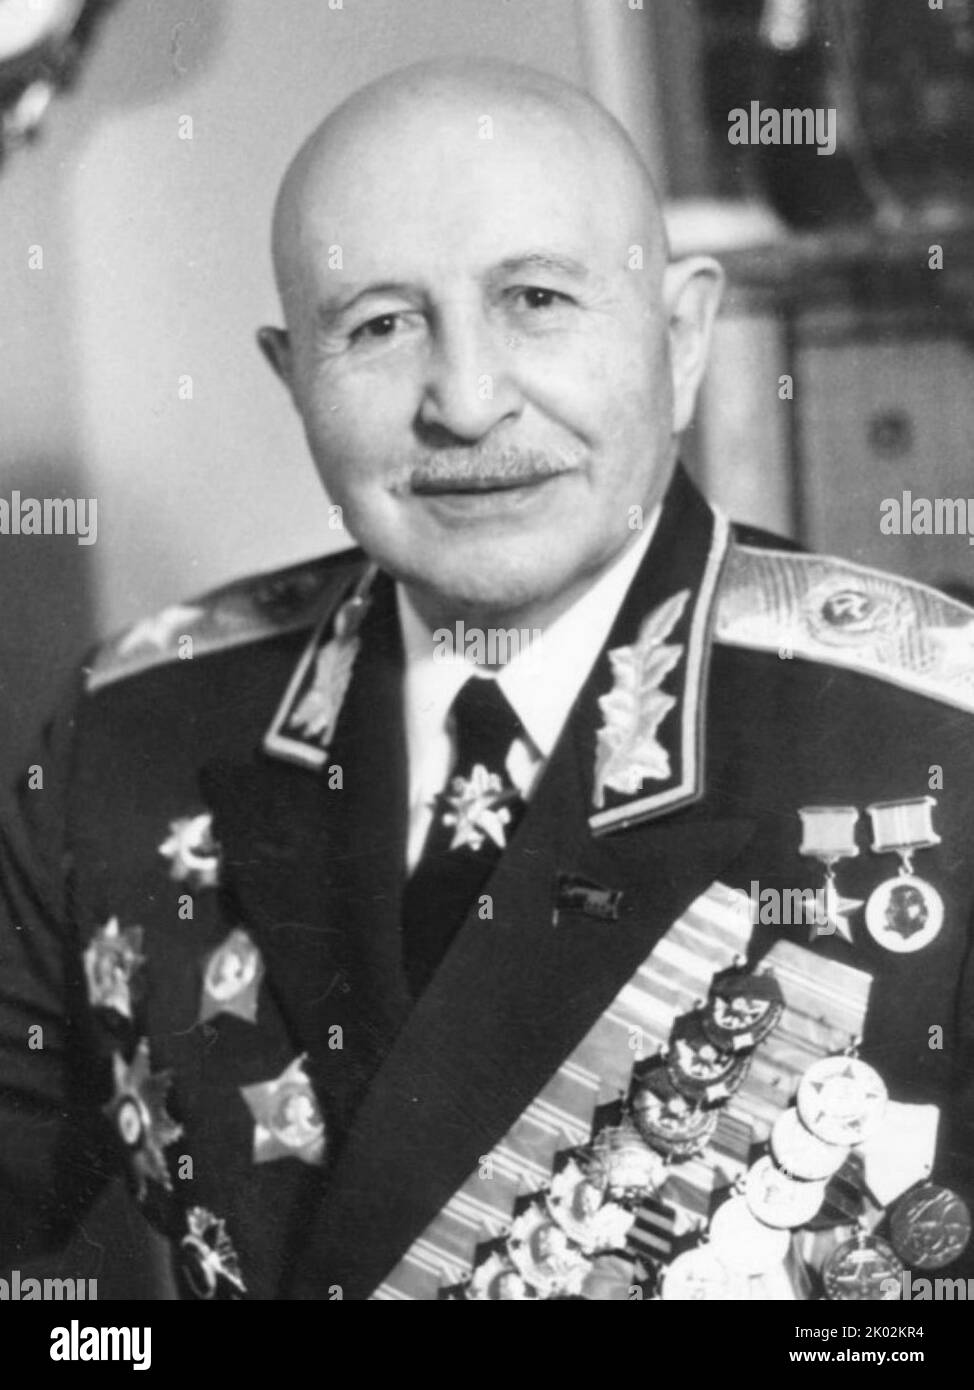 Iwan Christoforowitsch Bagramyan (1897 - 1982), sowjetischer Militärkommandeur und Marschall der Sowjetunion armenischer Herkunft. Während des Zweiten Weltkriegs wurde Bagramyan nach dem lettischen Max Reyter der zweite nicht-slawische Militäroffizier, der Kommandant einer Front wurde. Stockfoto